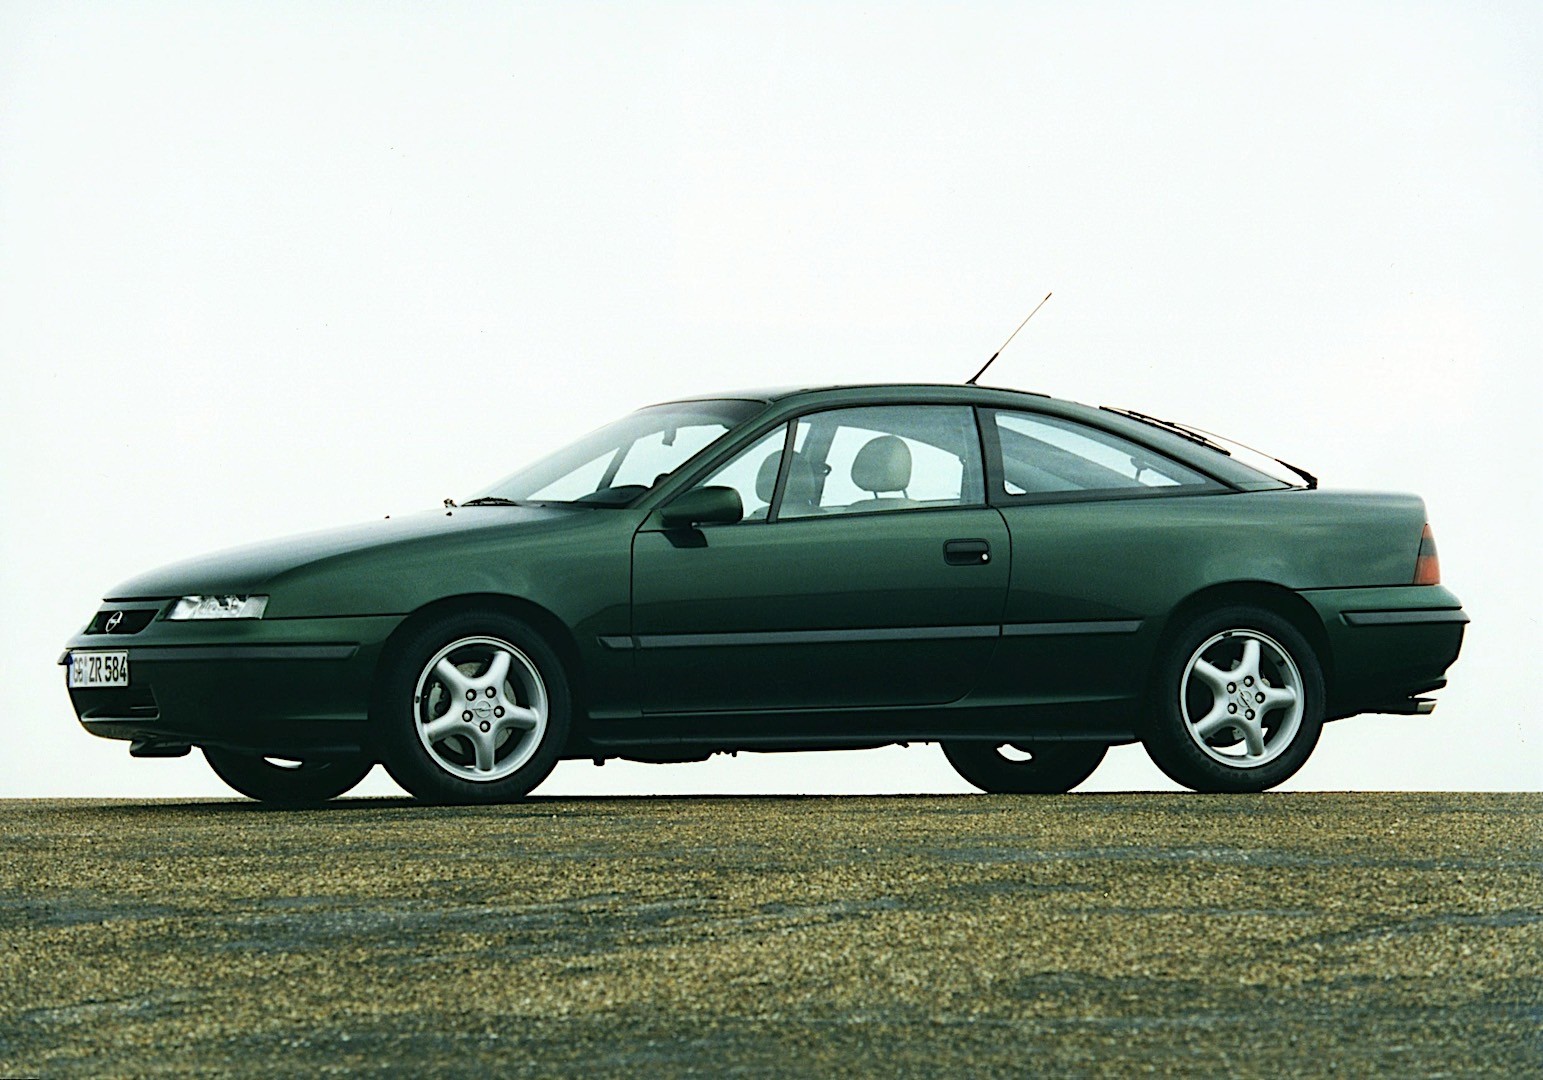 GH Top Qualité * NOUVEAU 2 ressorts HA arrière Opel Calibra A Année de construction 1990-1997